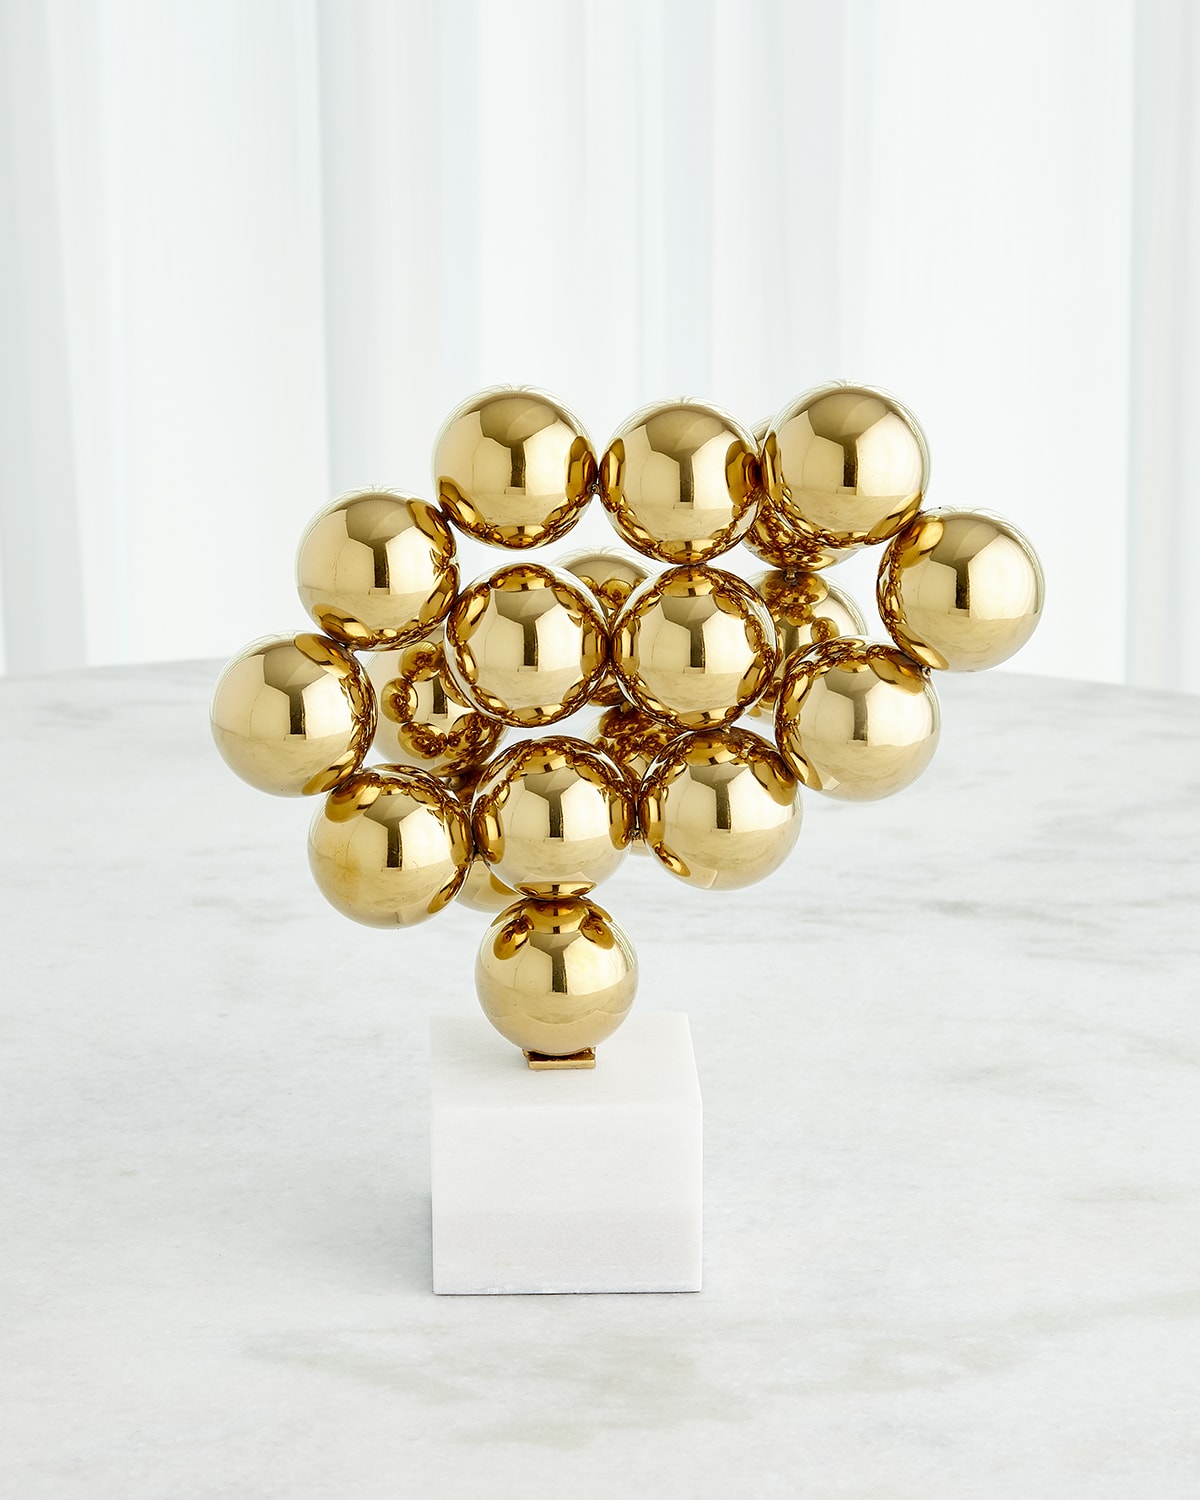 Global Views Sphere Sculpture In Gold